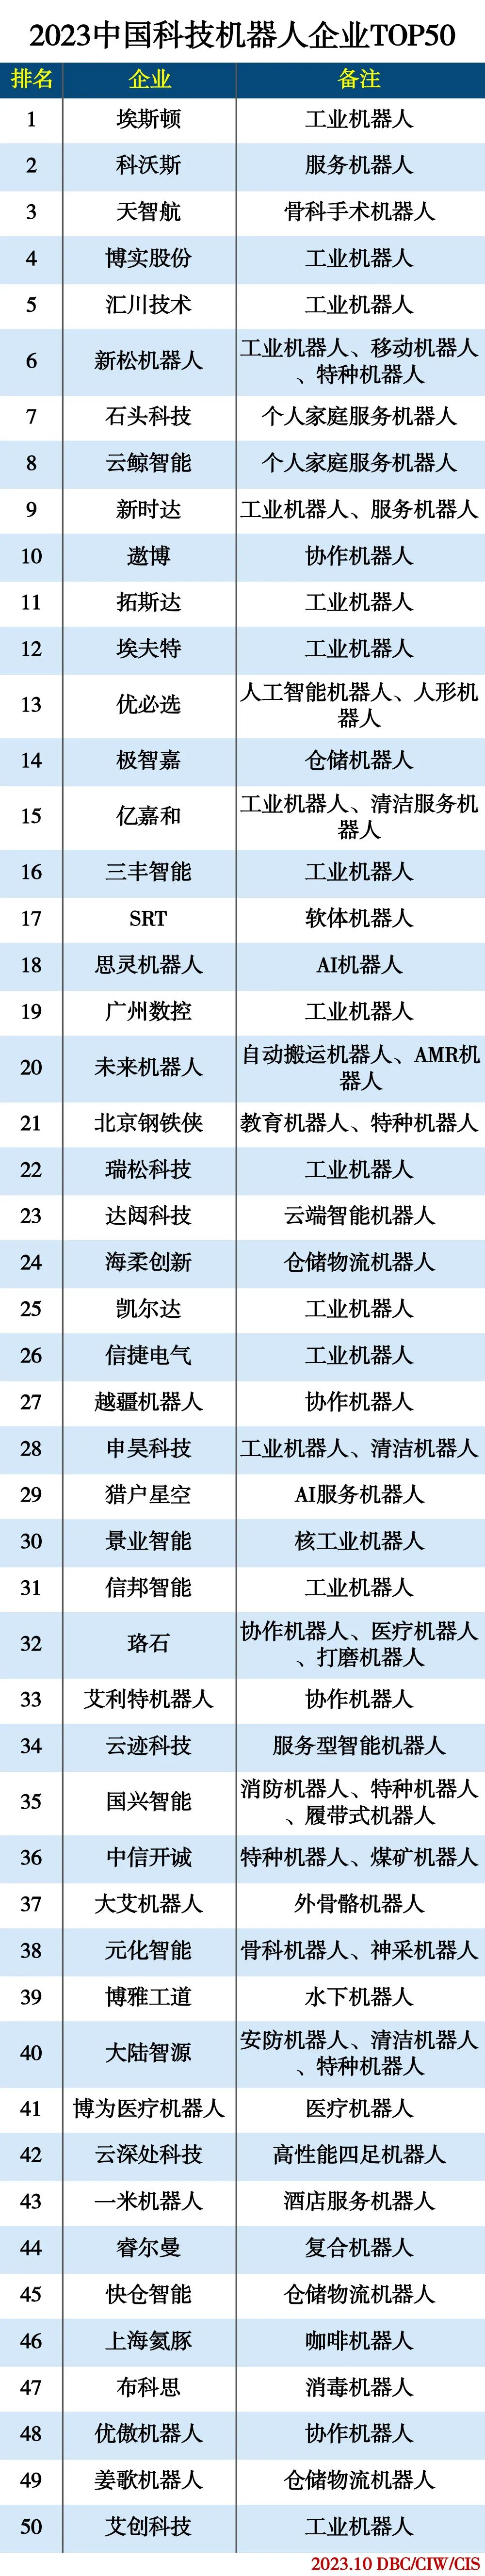 2023中国科技机器人企业TOP50